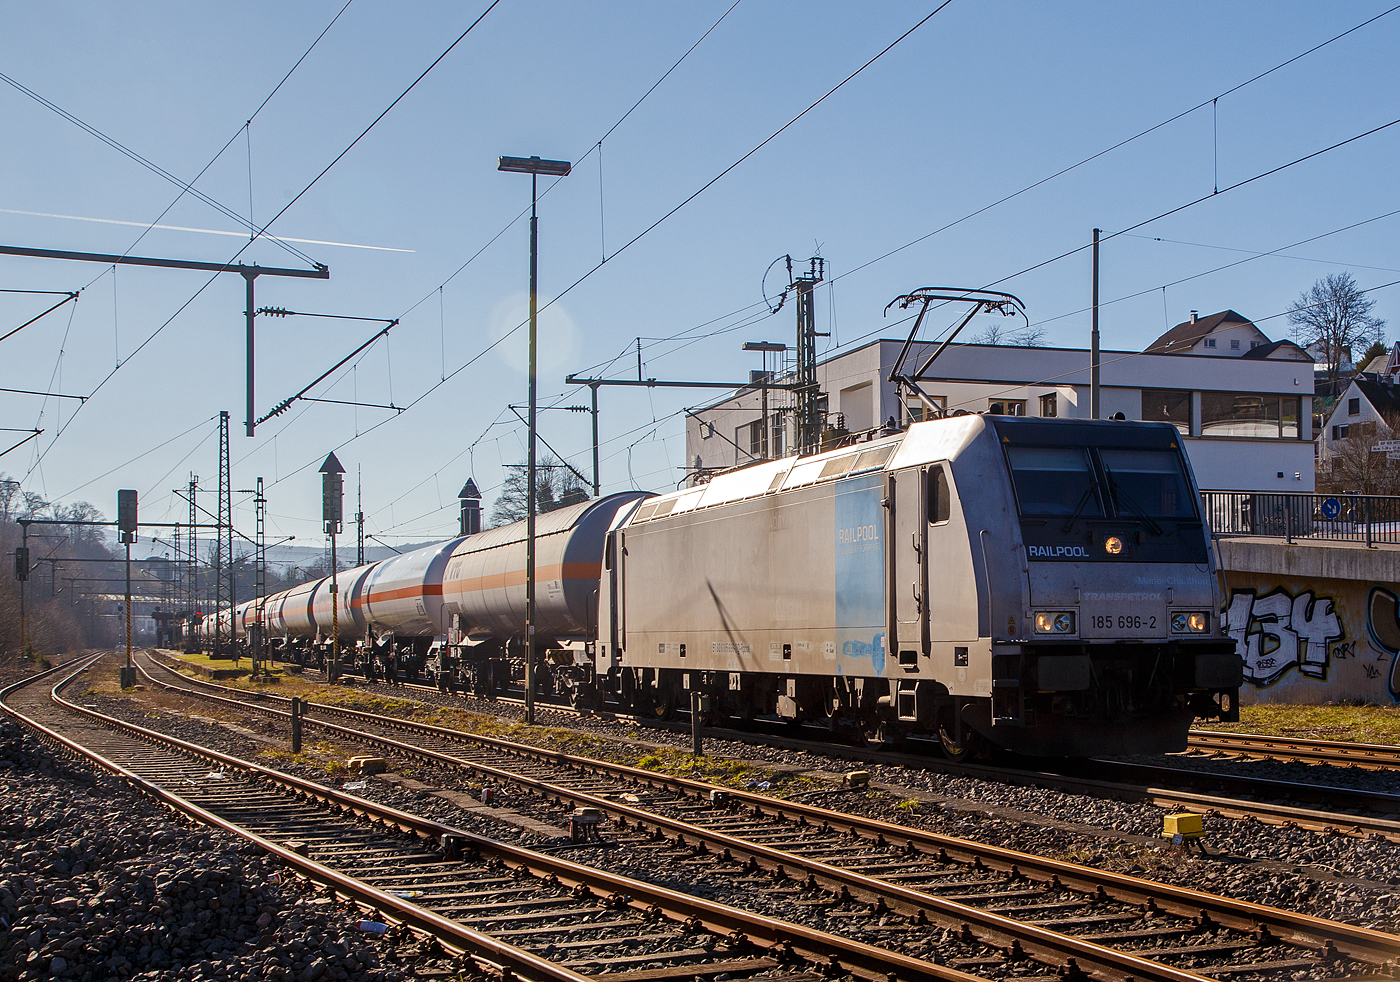 Nun sind die Schranken am Bü 343 geschlossen und sie hat Hp 1 oder 2...
Die 185 696-2 „Marie-Chanthou“ (91 80 6185 696-2 D-Rpool) der Railpool fährt am 14.02.2023 mit einem Druckgas-Kesselwagenzug über die Siegstrecke (KBS 460), durch Niederschelderhütte in Richtung Siegen.

Die TRAXX F140 AC2 wurde 2010 von Bombardier in Kassel unter der Fabriknummer 34722 gebaut und an die Railpool geliefert. Die Lok ist für Deutschland und Österreich zugelassen. Die ehemaligen Zulassungen für Schweden und Norwegen sind nun durchgestrichen.